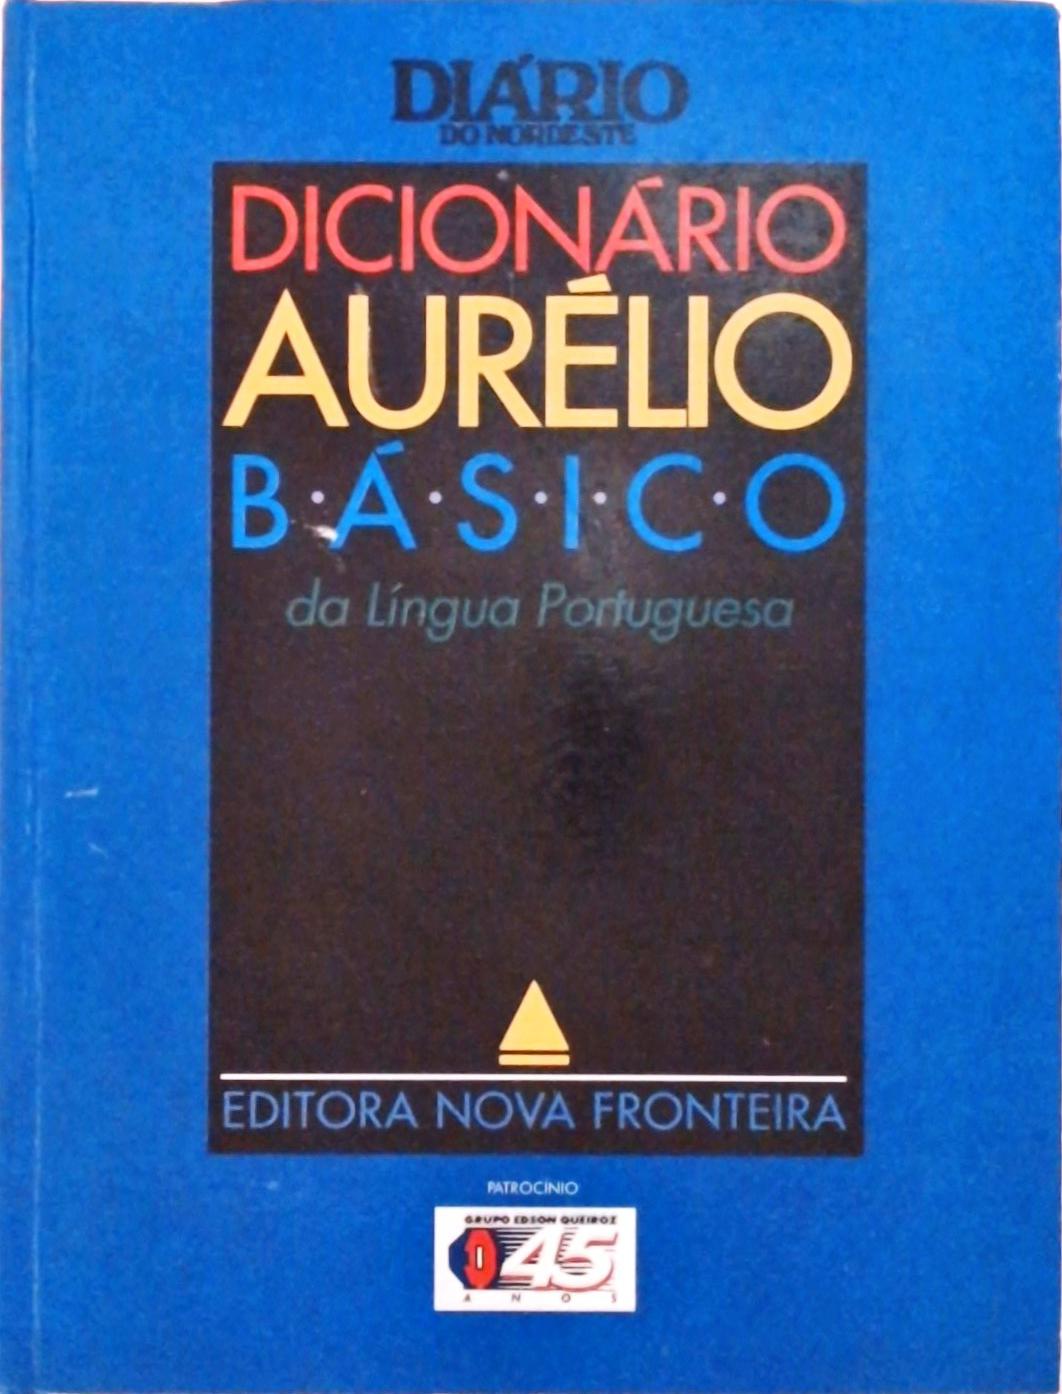 Dicionário Aurélio Básico da Língua Portuguesa